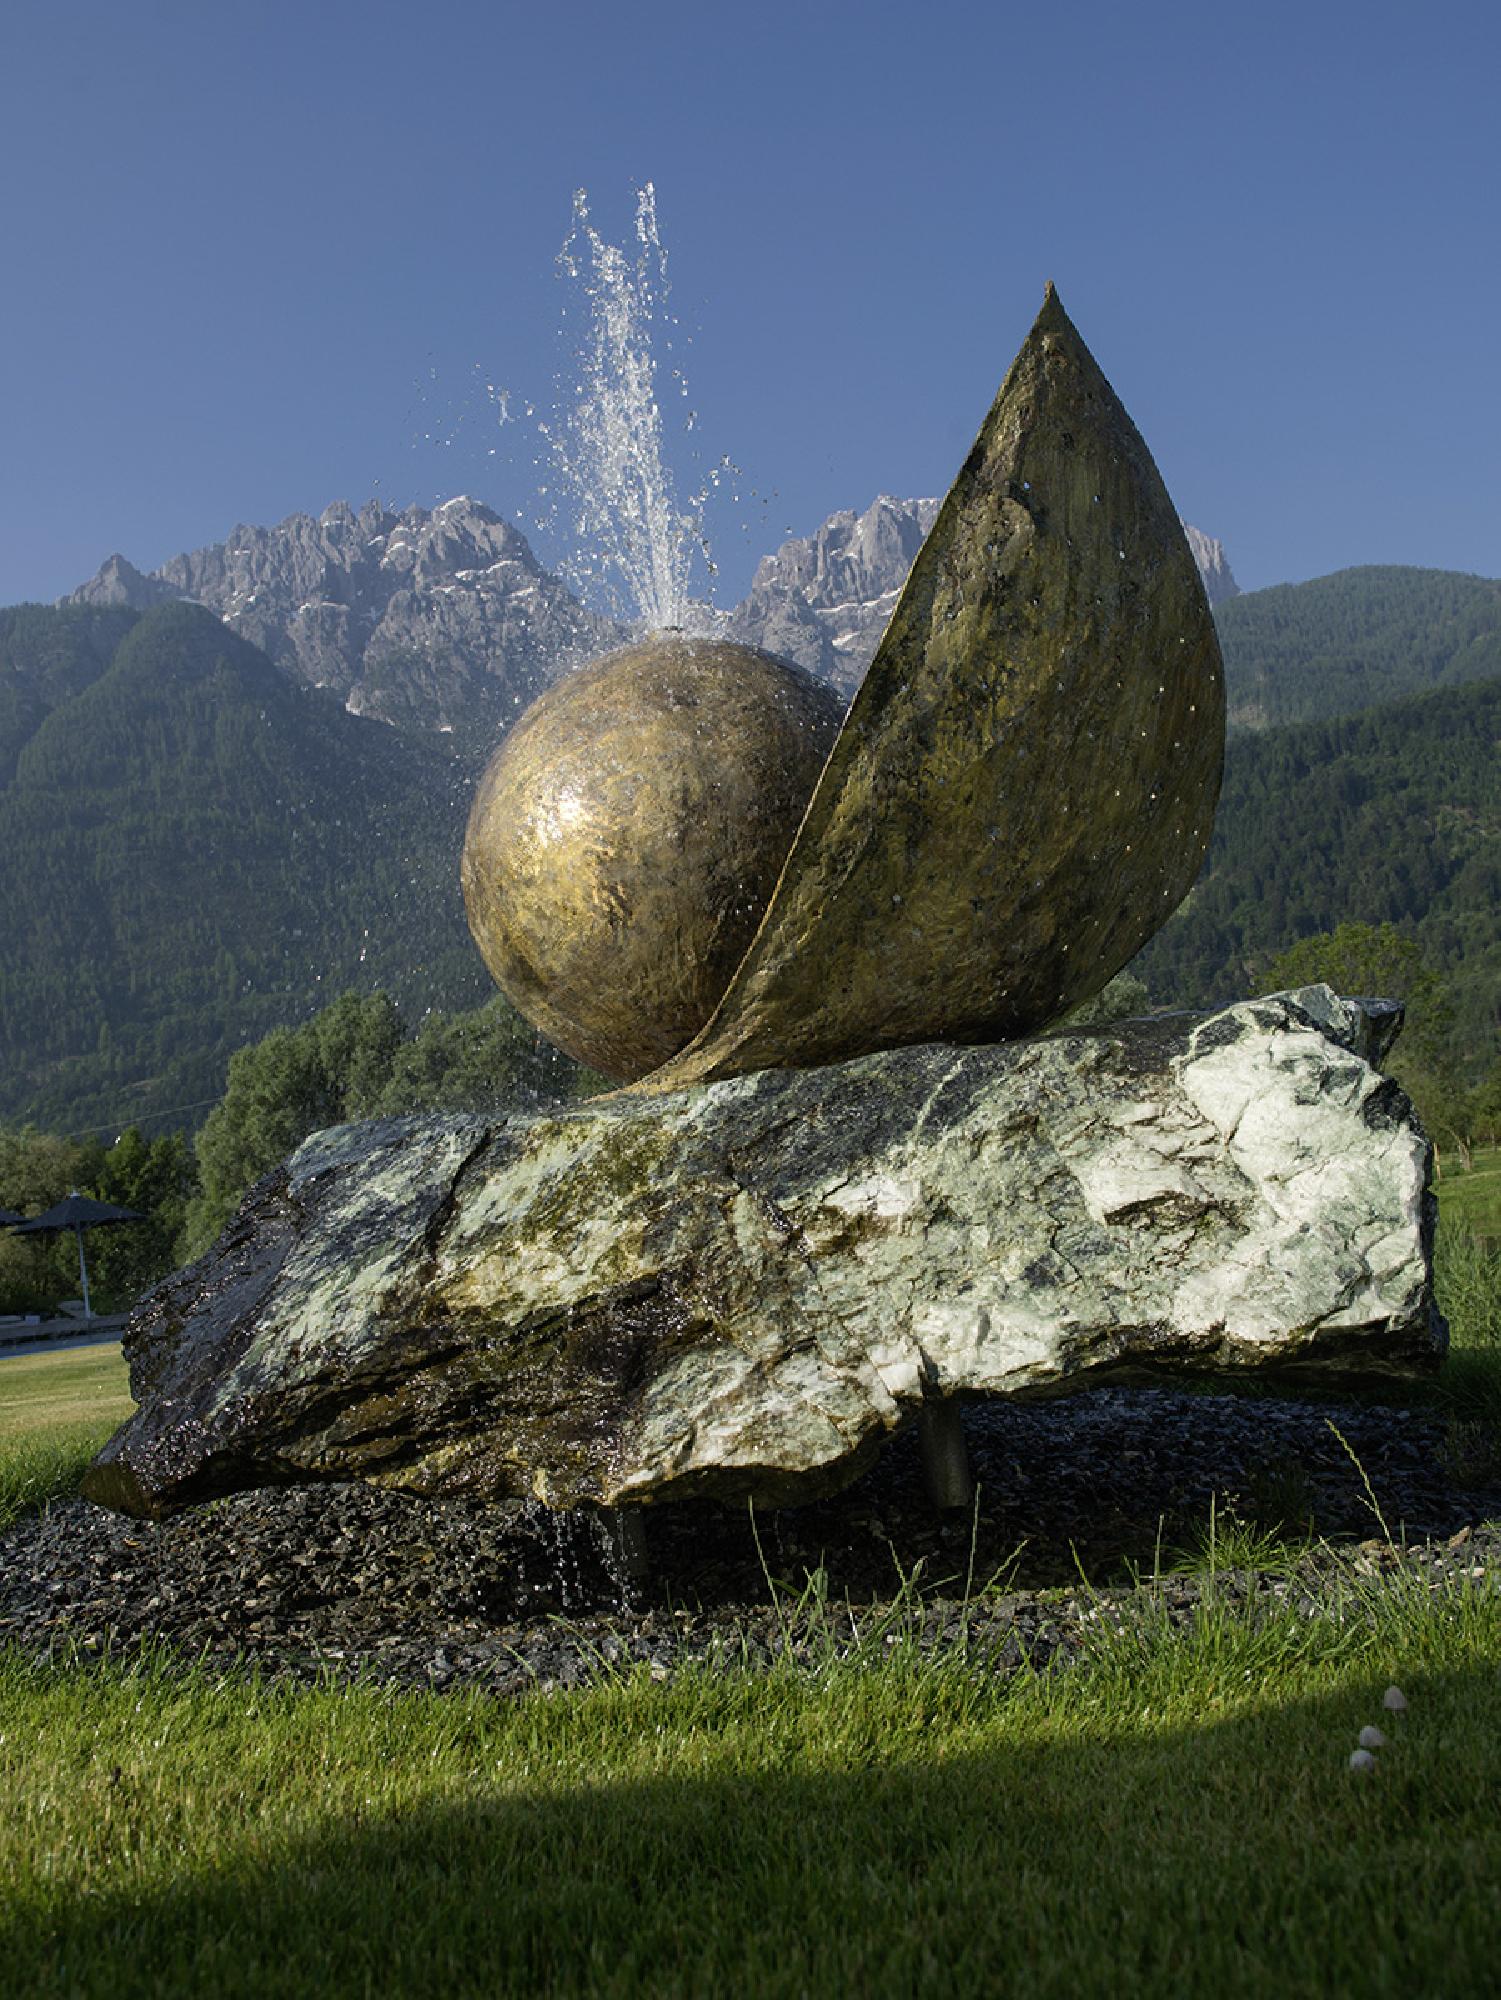 Leonard Lorenz: Brunnen
2012
bronze stone